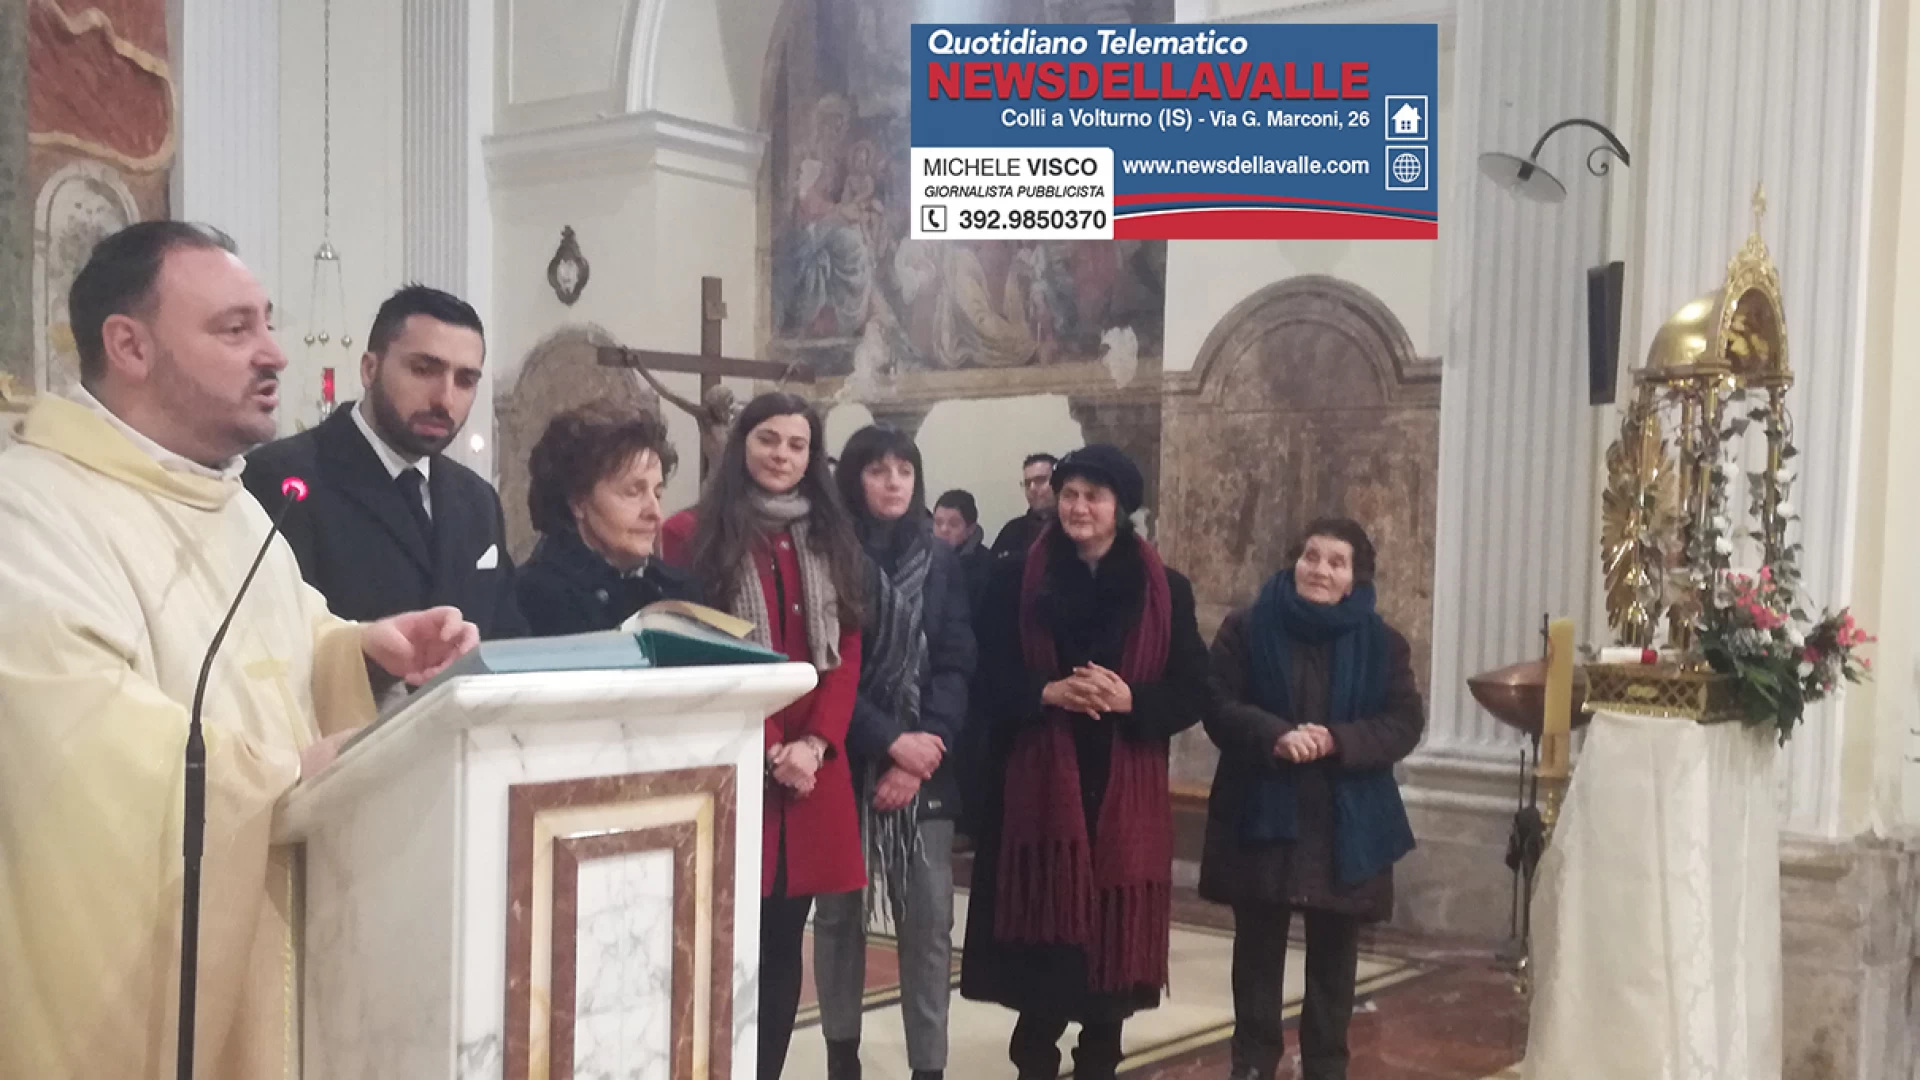 La famiglia Raddi omaggia Colli di una reliquia di Sant’Antonio Abate. Il  servizio video della celebrazione. Emozione unica in paese.